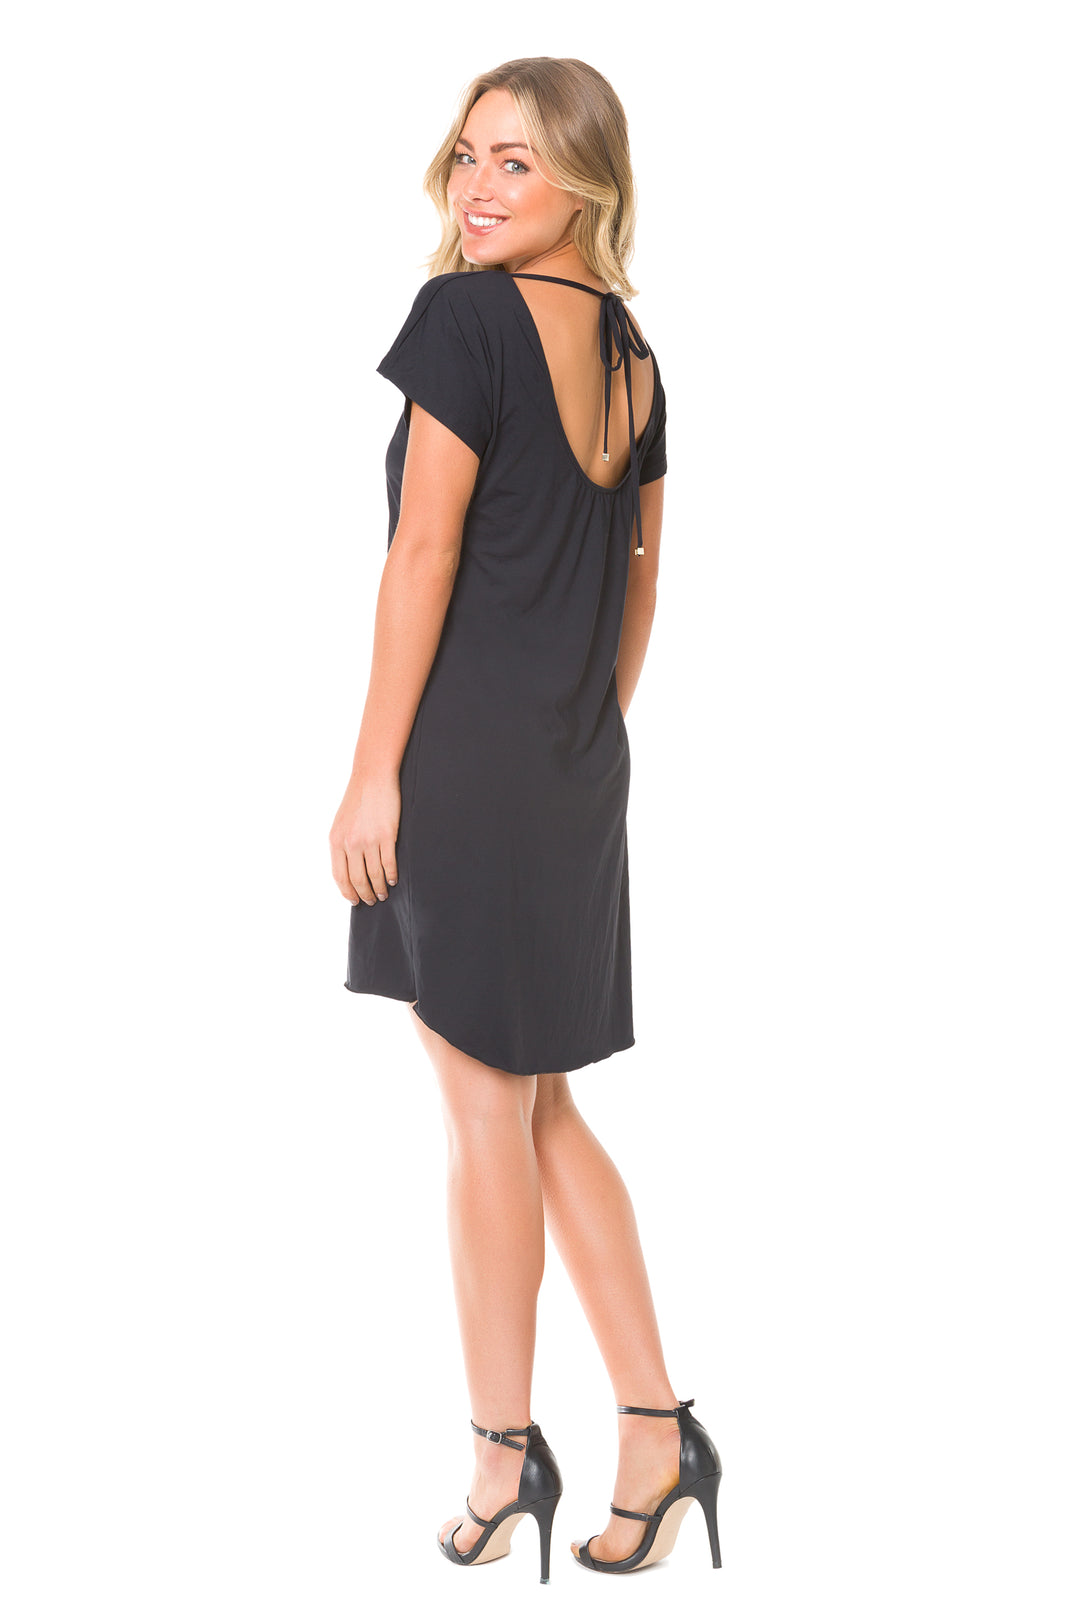 Black Celine Dress - Lybethras Swimwear